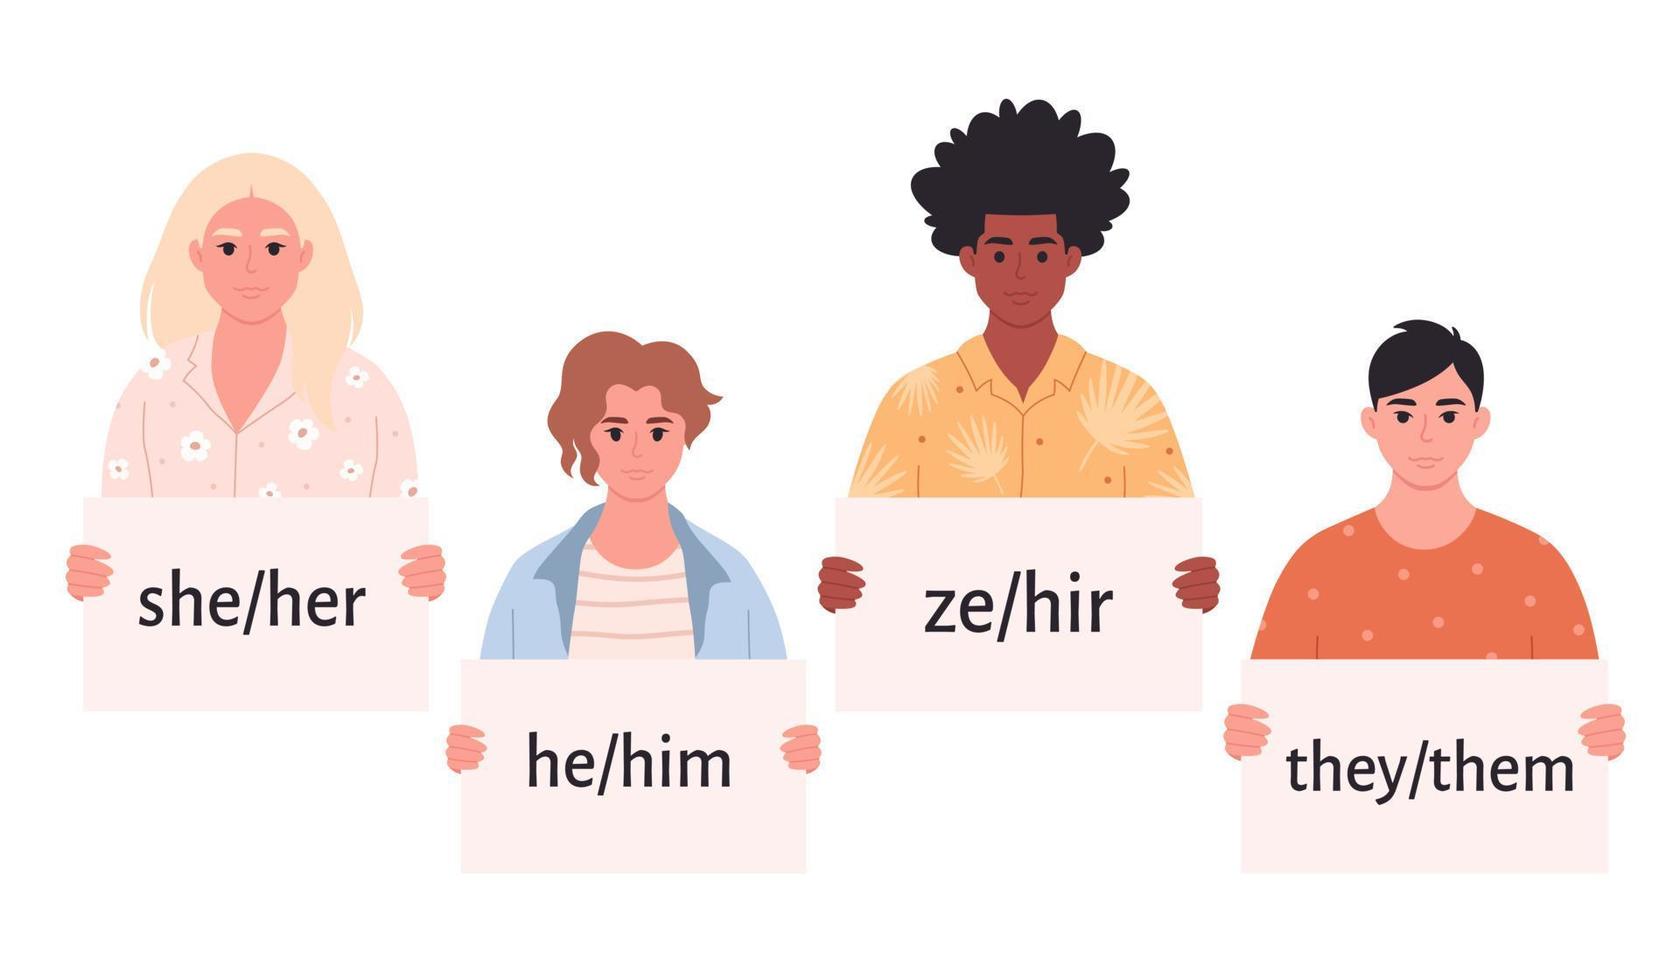 jóvenes con cartel con pronombres de género. ella, él, ellos, ze, no binario. movimiento de género neutral. comunidad lgbtq. vector